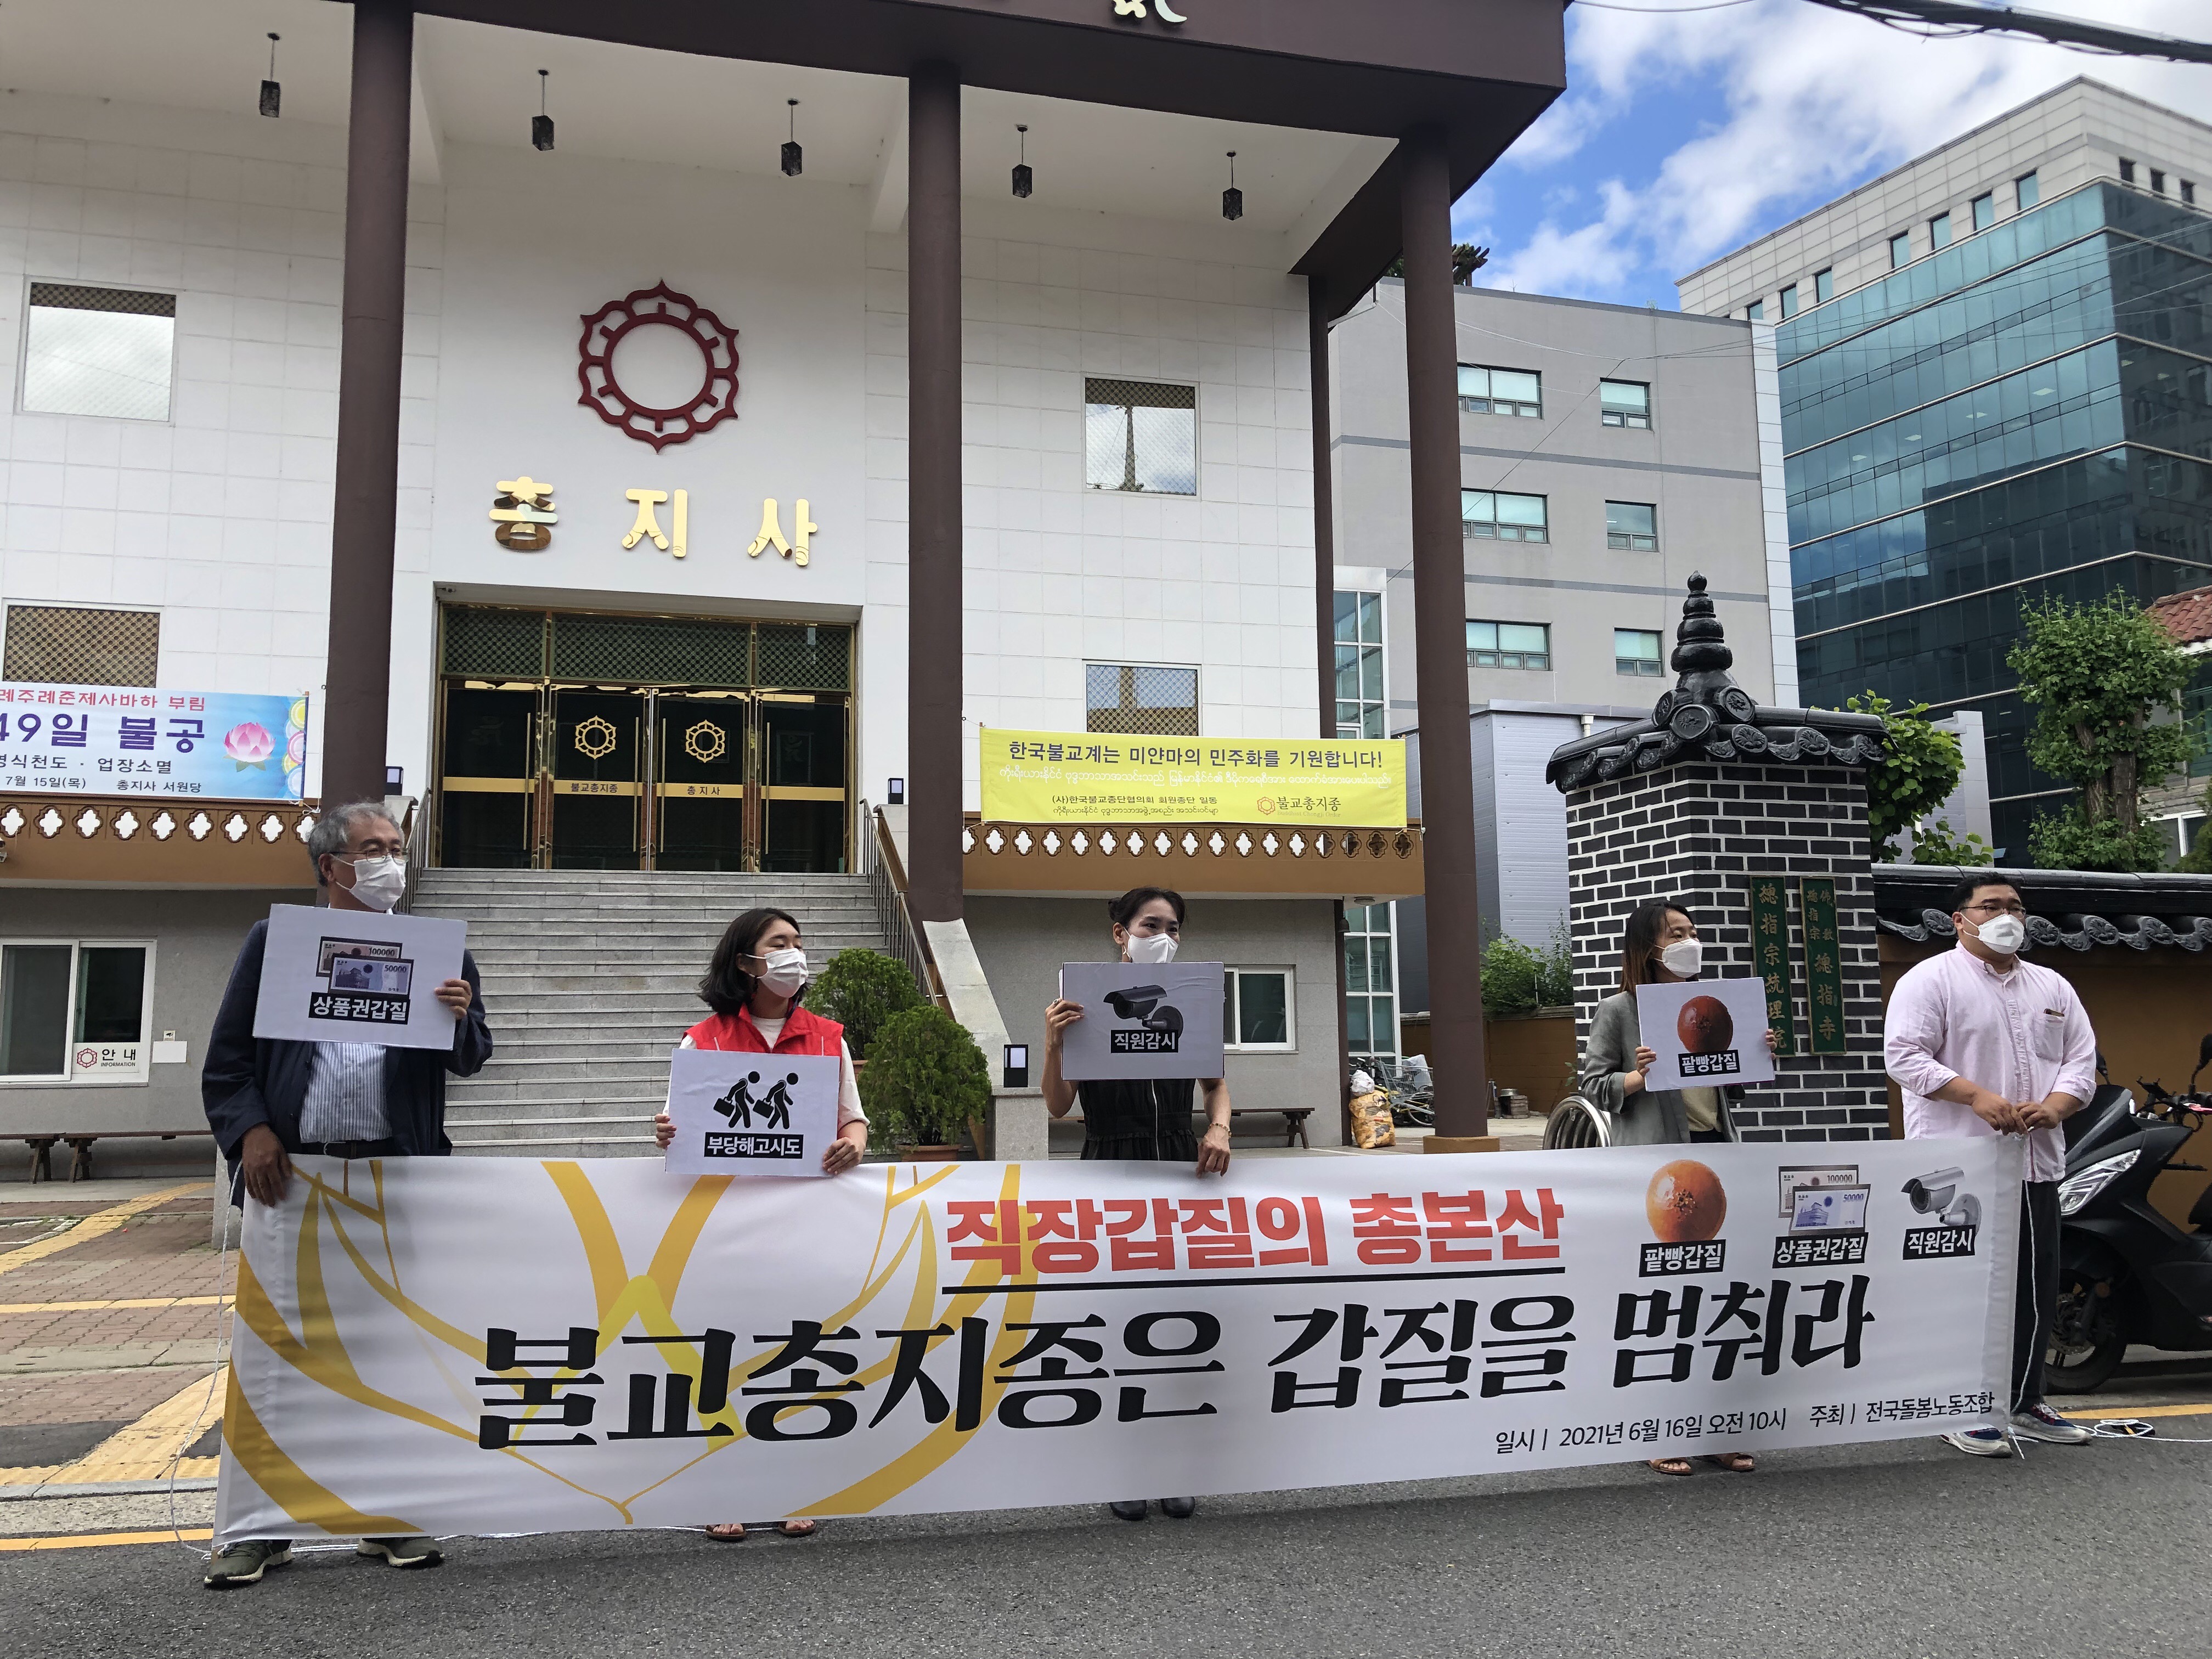 오늘(16일) 오전, 김민주 씨와 전국돌봄노조가 불교총지종 앞에서 기자회견을 하고 있는 모습.